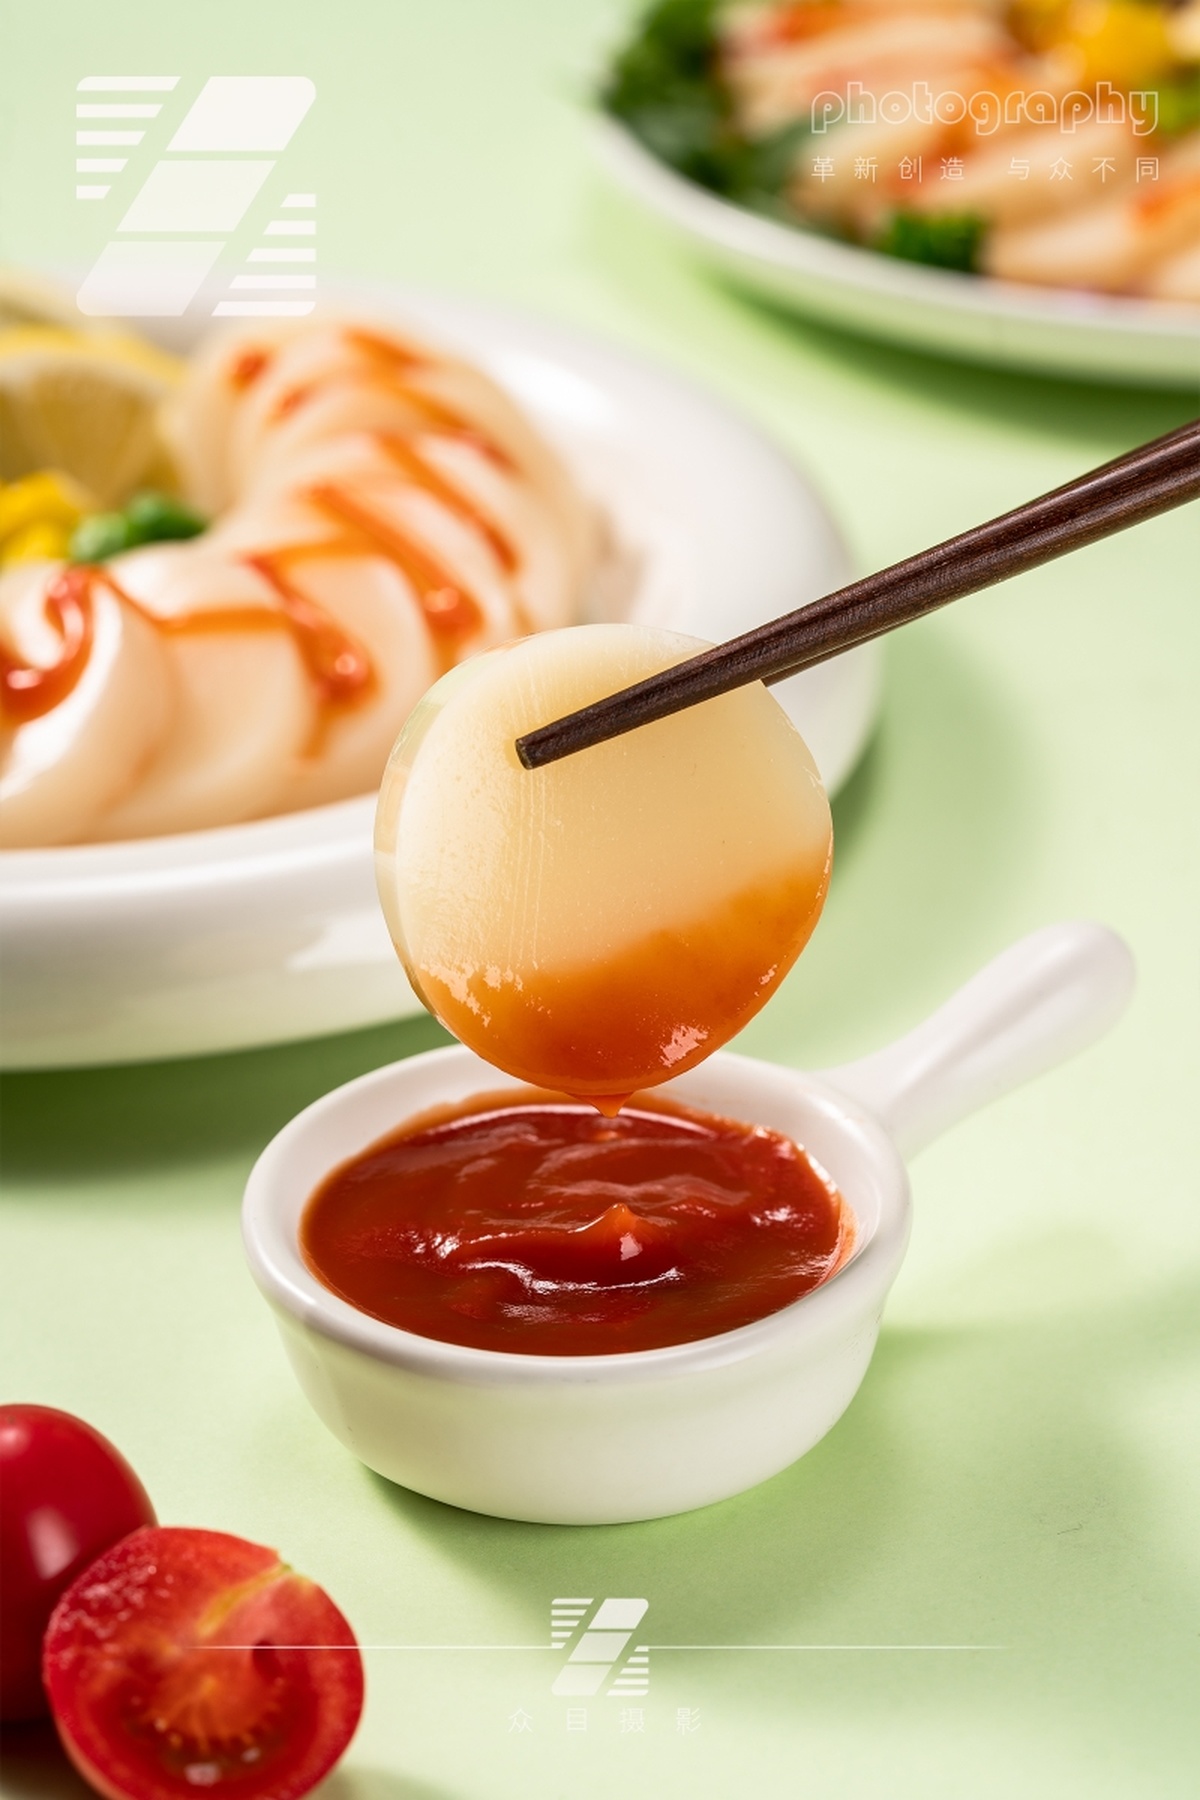 一个小碗中有一个蛋 上面放着番茄酱 背景是一份食物。